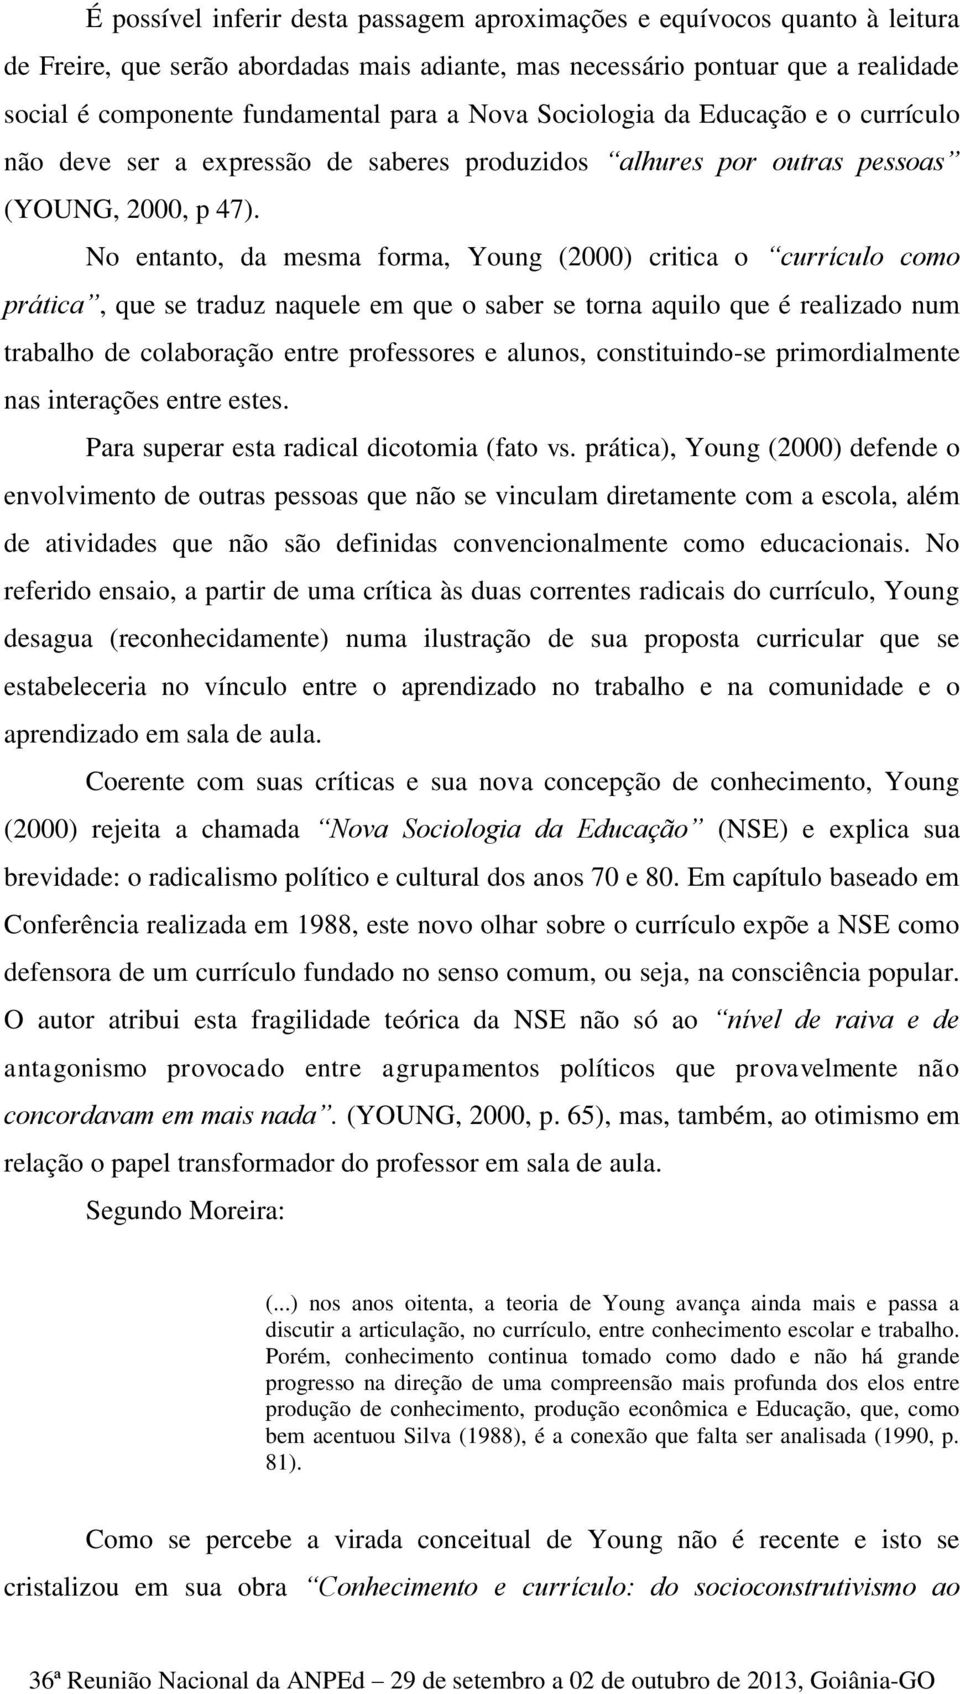 No entanto, da mesma forma, Young (2000) critica o currículo como prática, que se traduz naquele em que o saber se torna aquilo que é realizado num trabalho de colaboração entre professores e alunos,